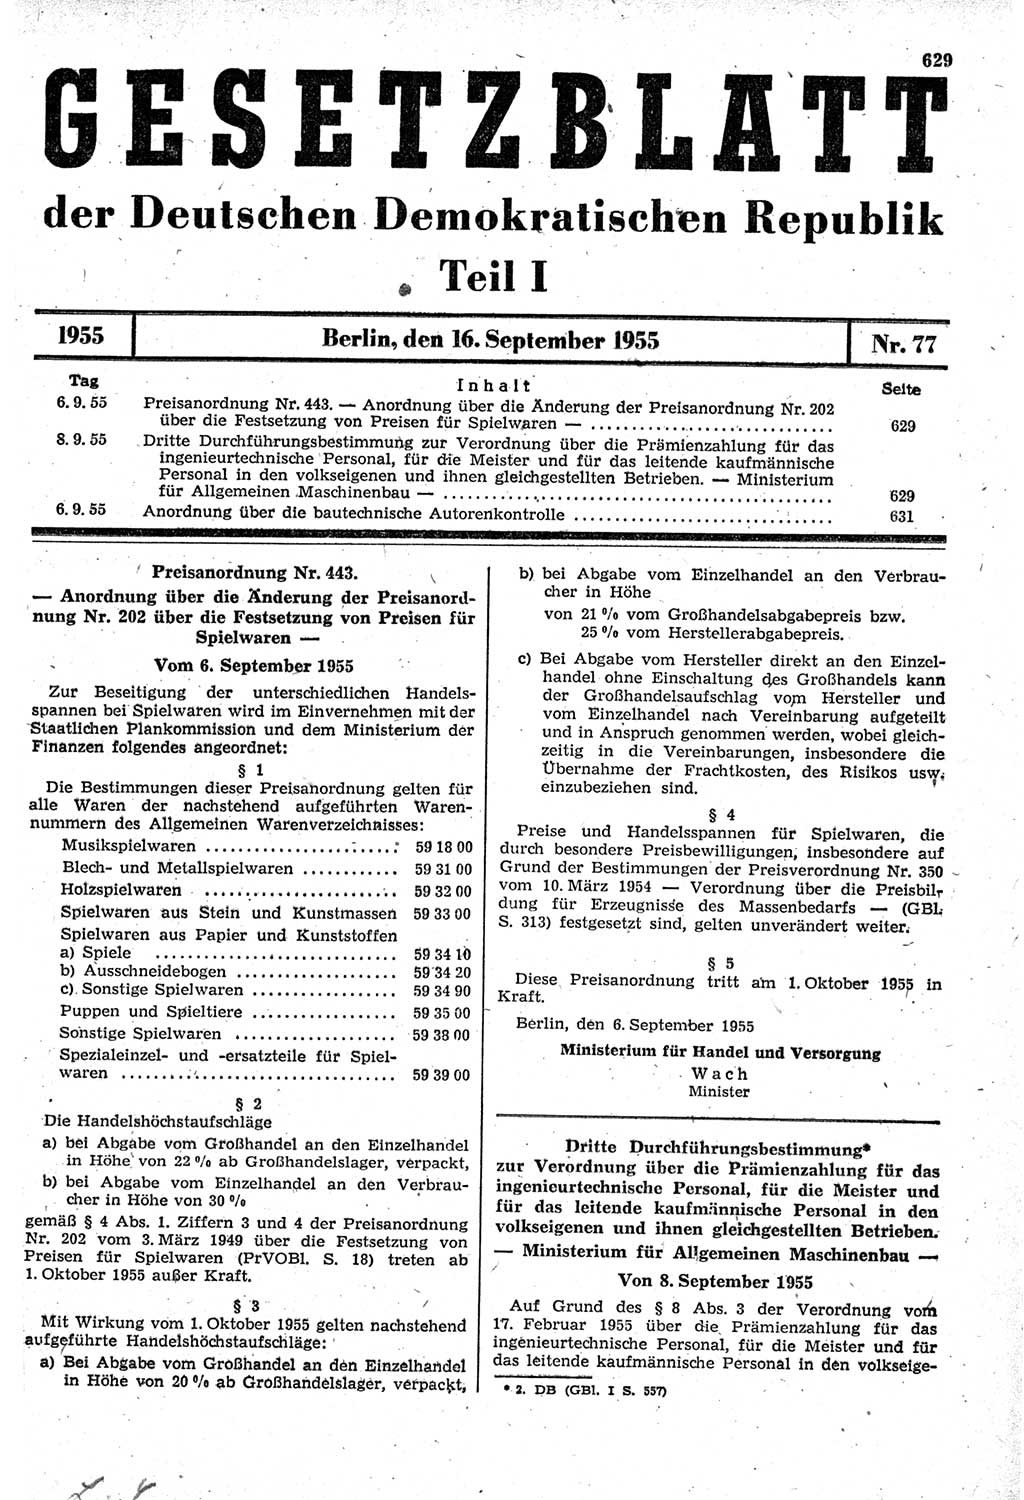 Gesetzblatt (GBl.) der Deutschen Demokratischen Republik (DDR) Teil Ⅰ 1955, Seite 629 (GBl. DDR Ⅰ 1955, S. 629)